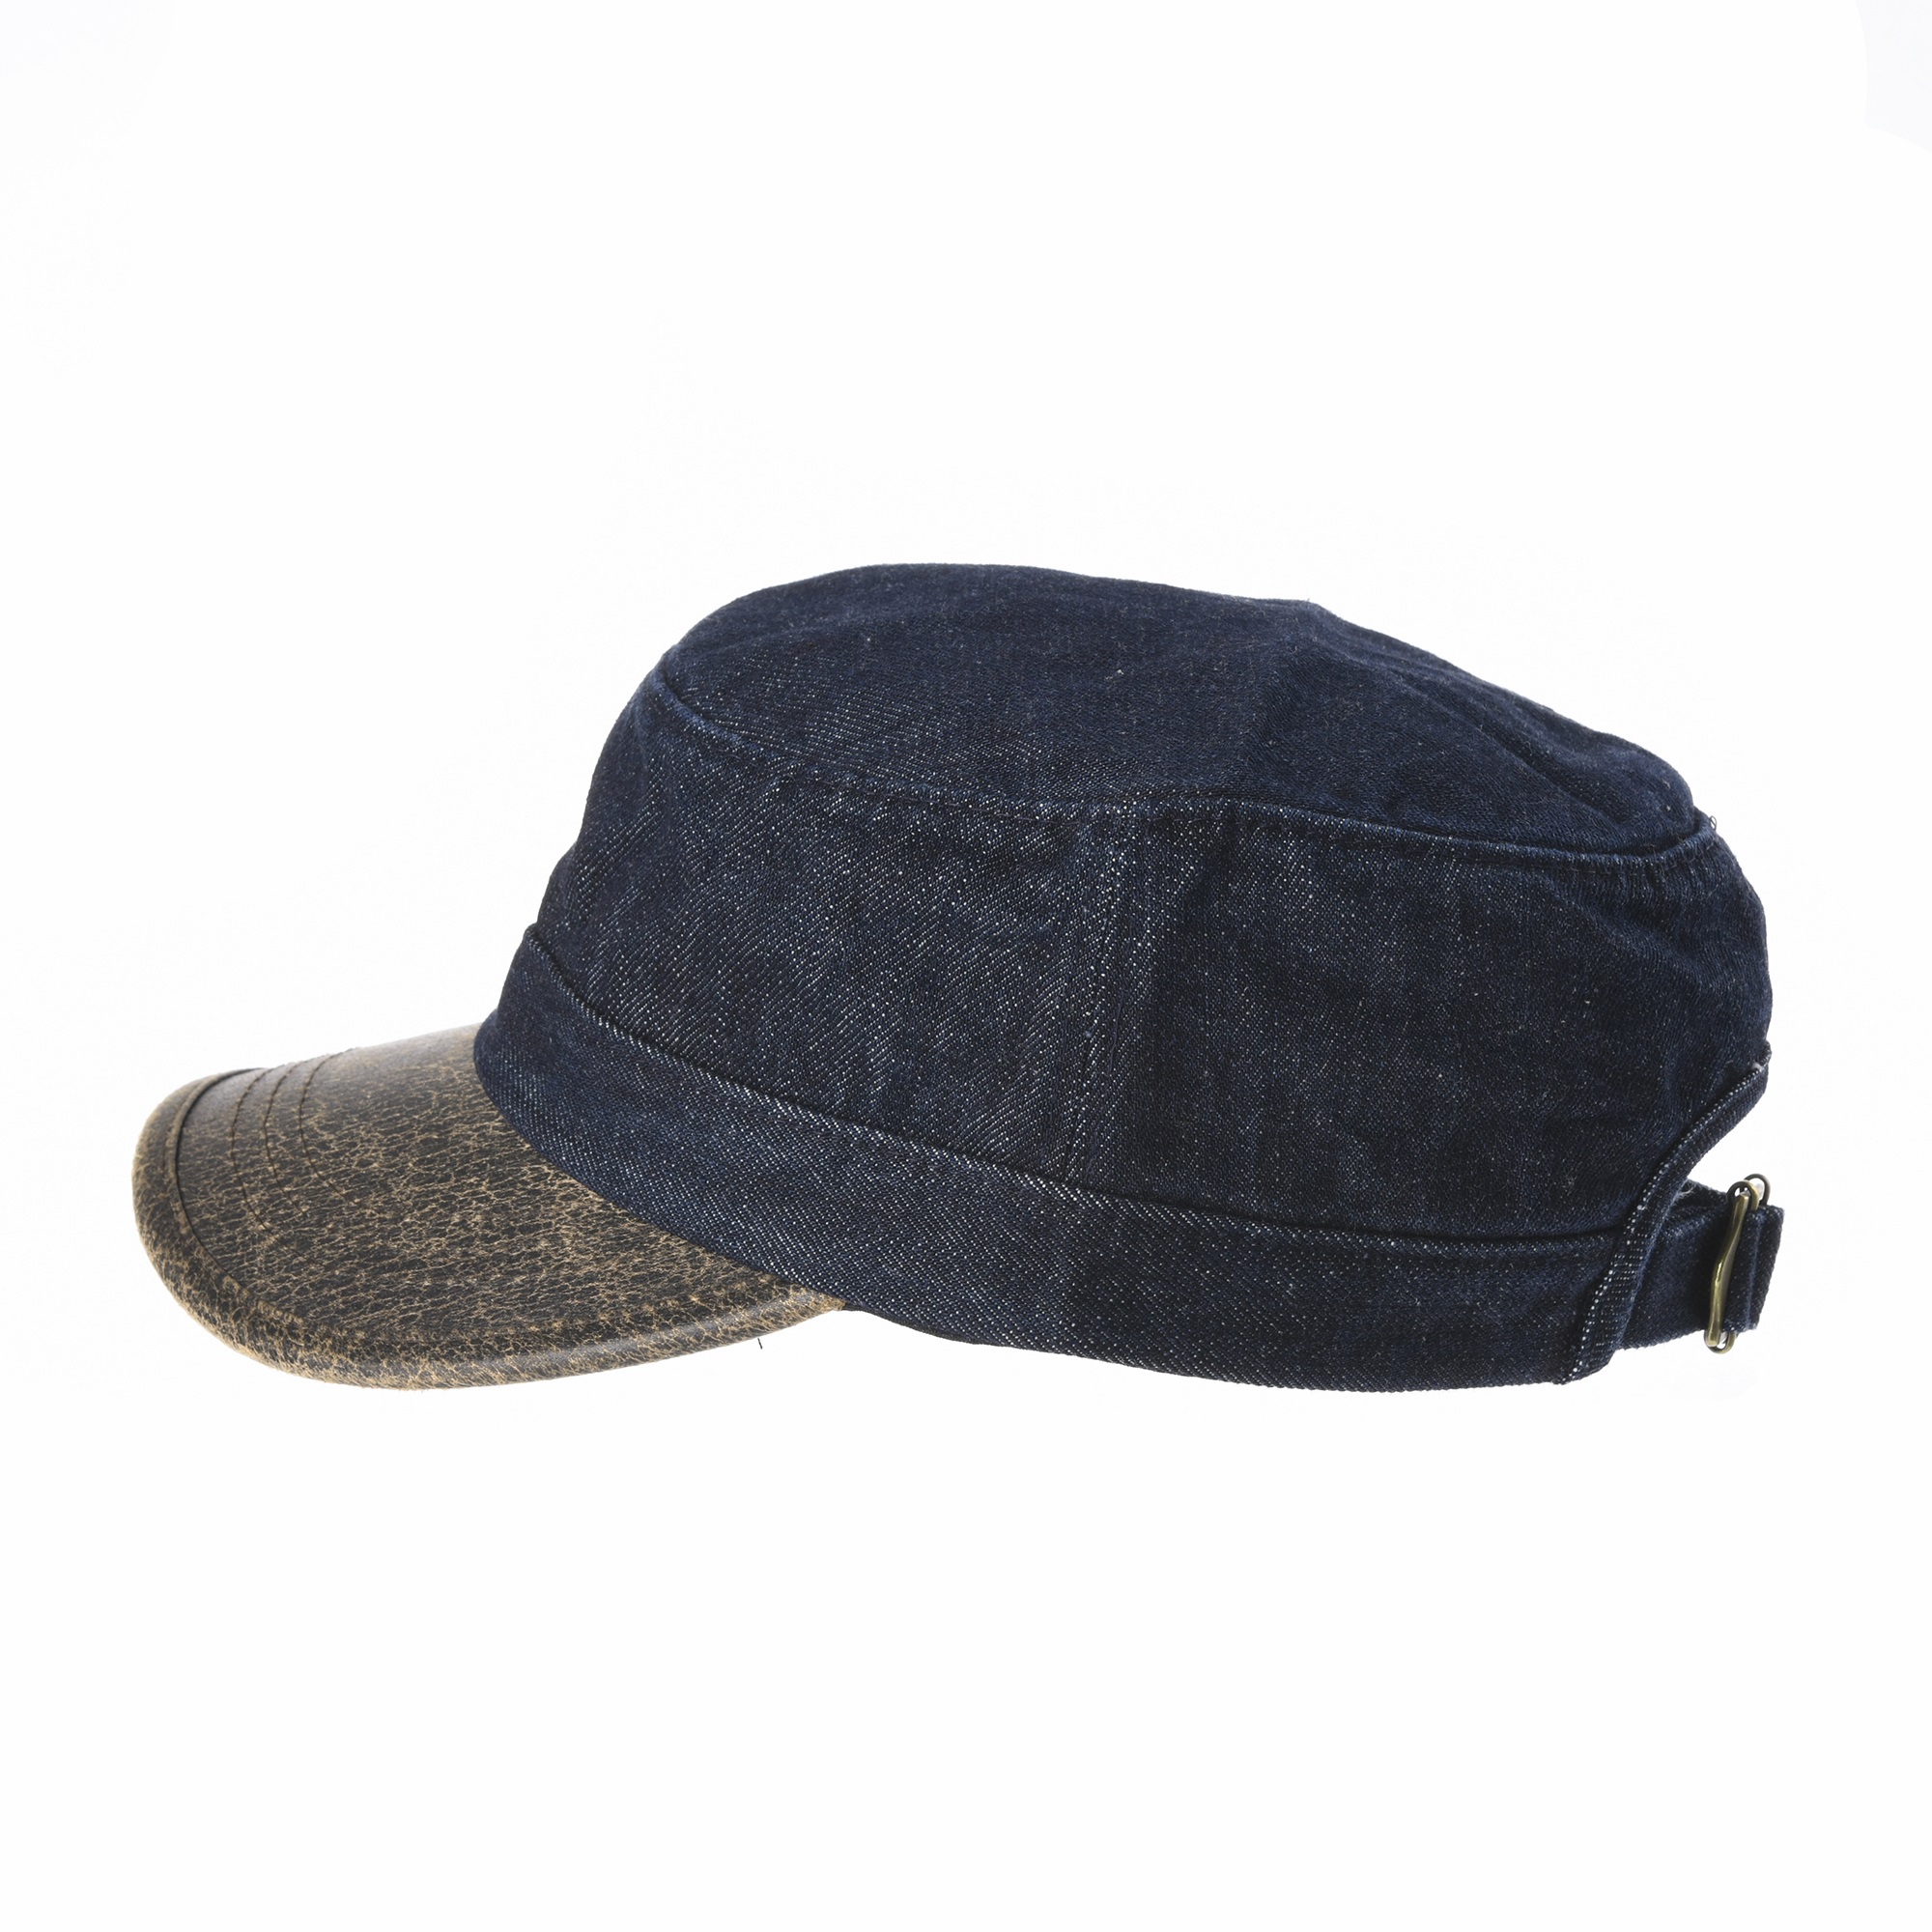 WITHMOONS Cadet Cap Denim Vintage Hat Faux Leather Brim NC4691 | eBay